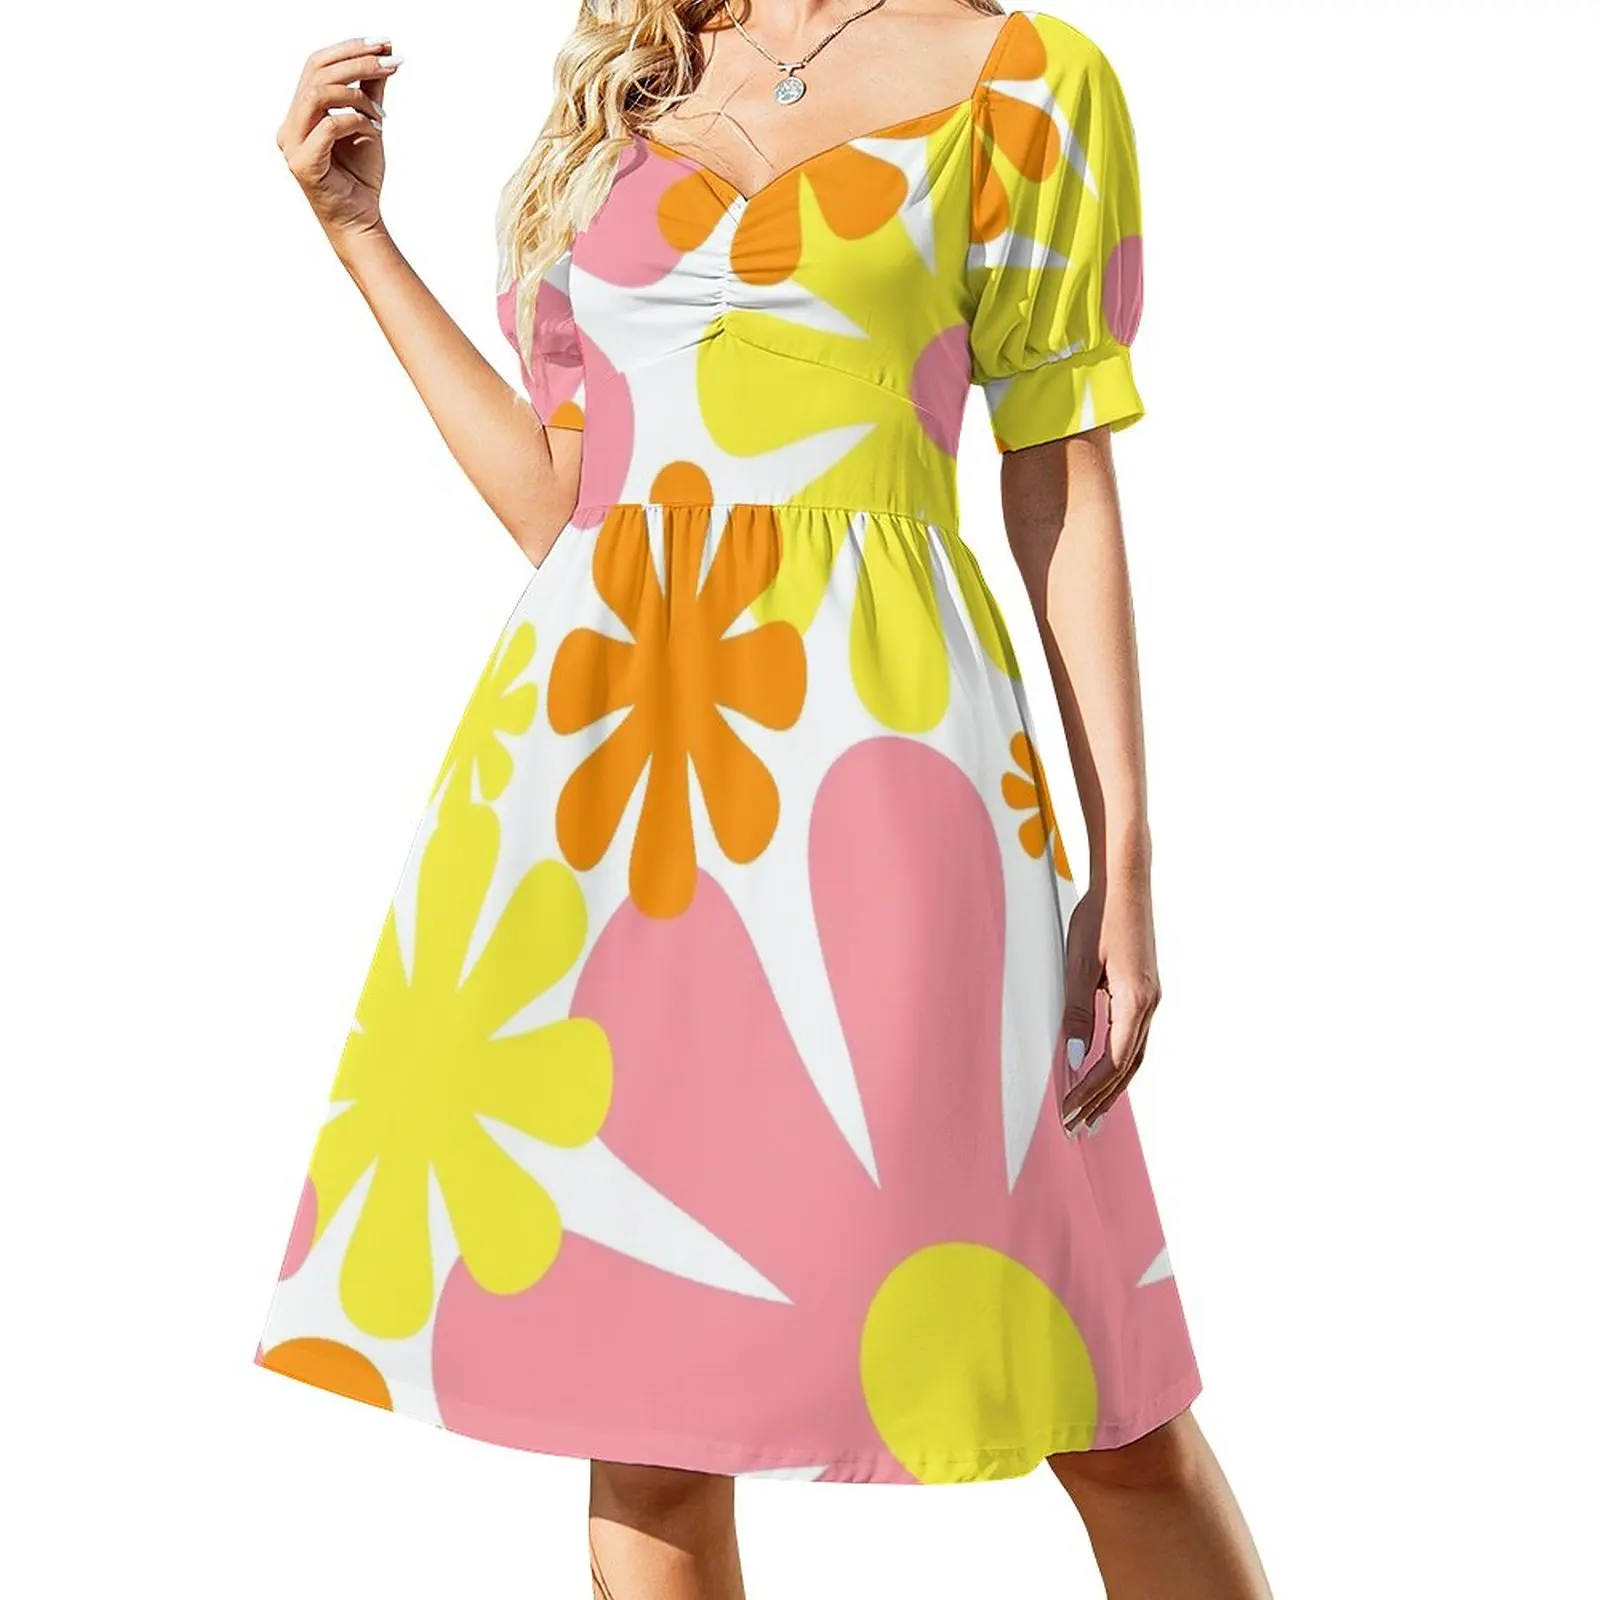 

Винтажное платье без рукавов в стиле ретро 60-х годов, с цветочным узором, розовое, желтое, оранжевое, белое